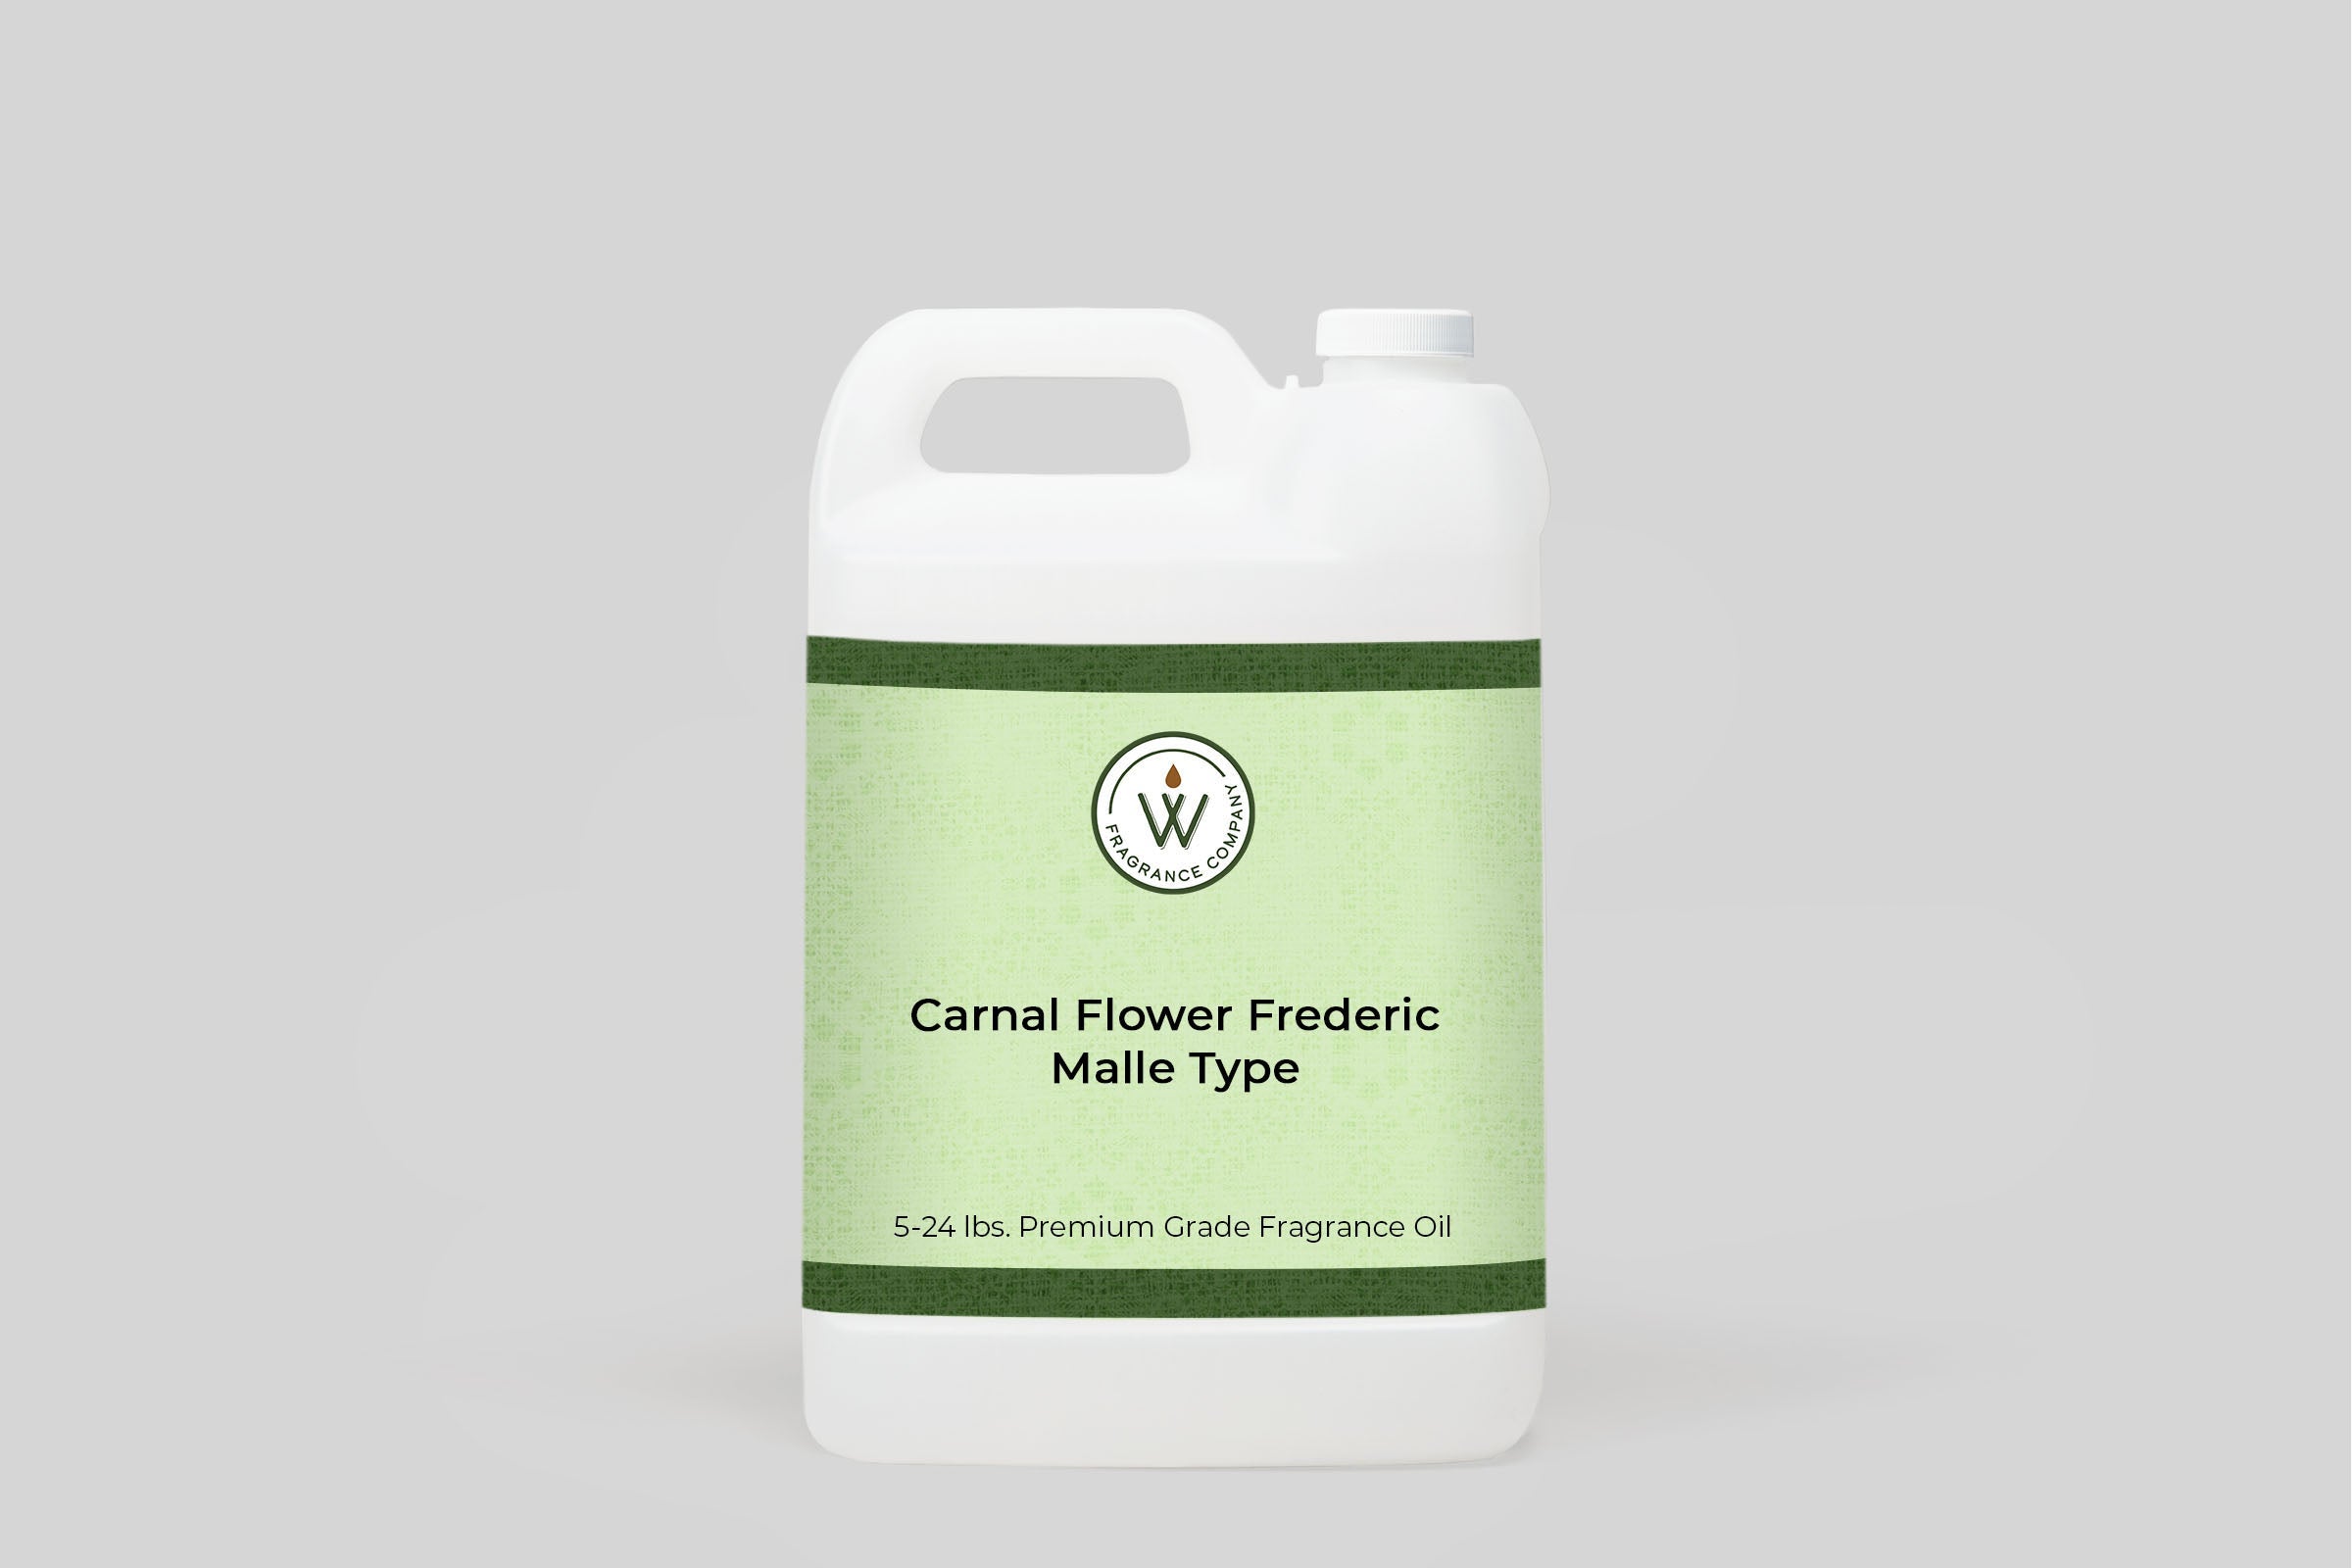 Carnal Flower Frederic Malle Type Fragrance Oil